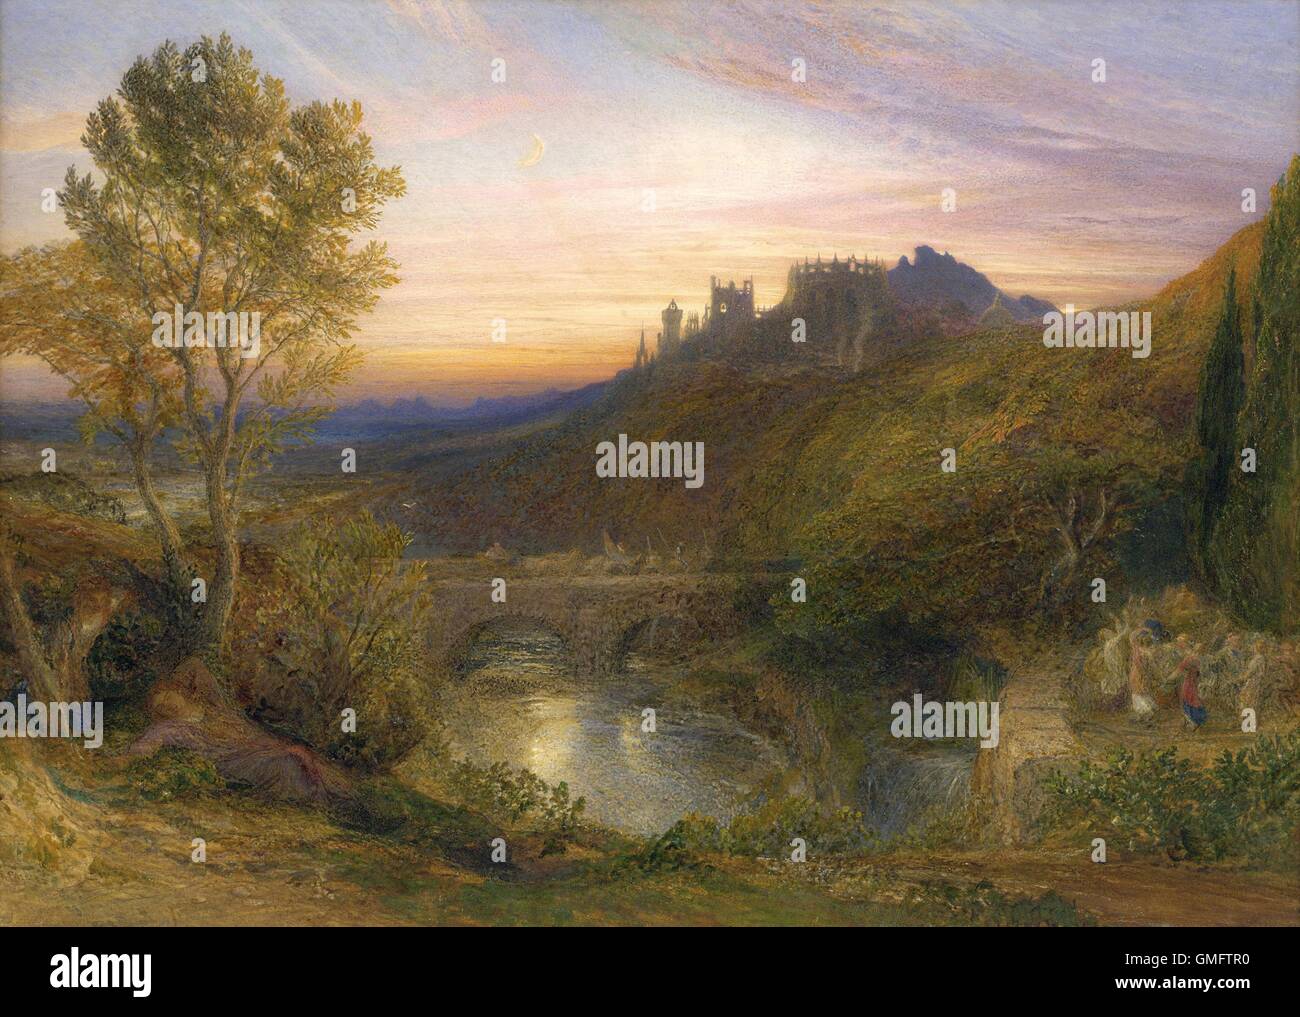 La ville de Tours (le flux), hanté par Samuel Palmer, c.1850-75. L'anglais de l'aquarelle. Paysage romantique britannique visionnaire idyillic avec danseurs (à droite), les chevaliers (sur le pont) et château médiéval dans la distance. (BSLOC 2016 1 149) Banque D'Images